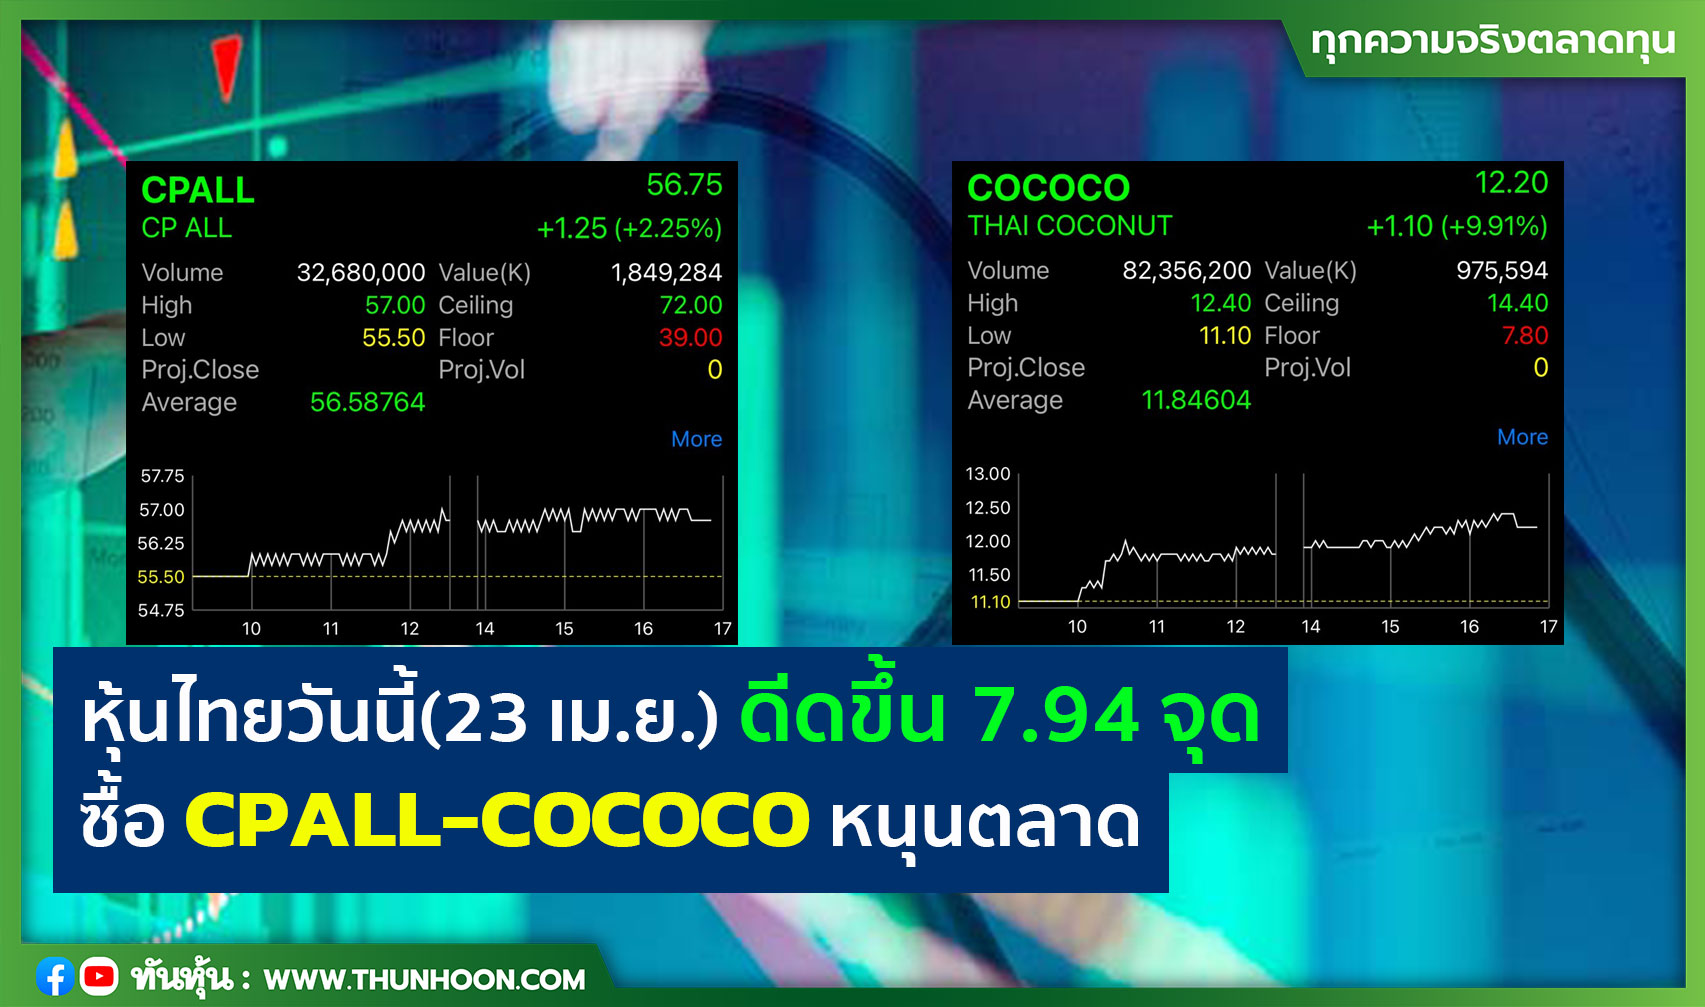 หุ้นไทยวันนี้(23 เม.ย.) ดีดขึ้น 7.94 จุด ซื้อ CPALL-COCOCO หนุนตลาด 